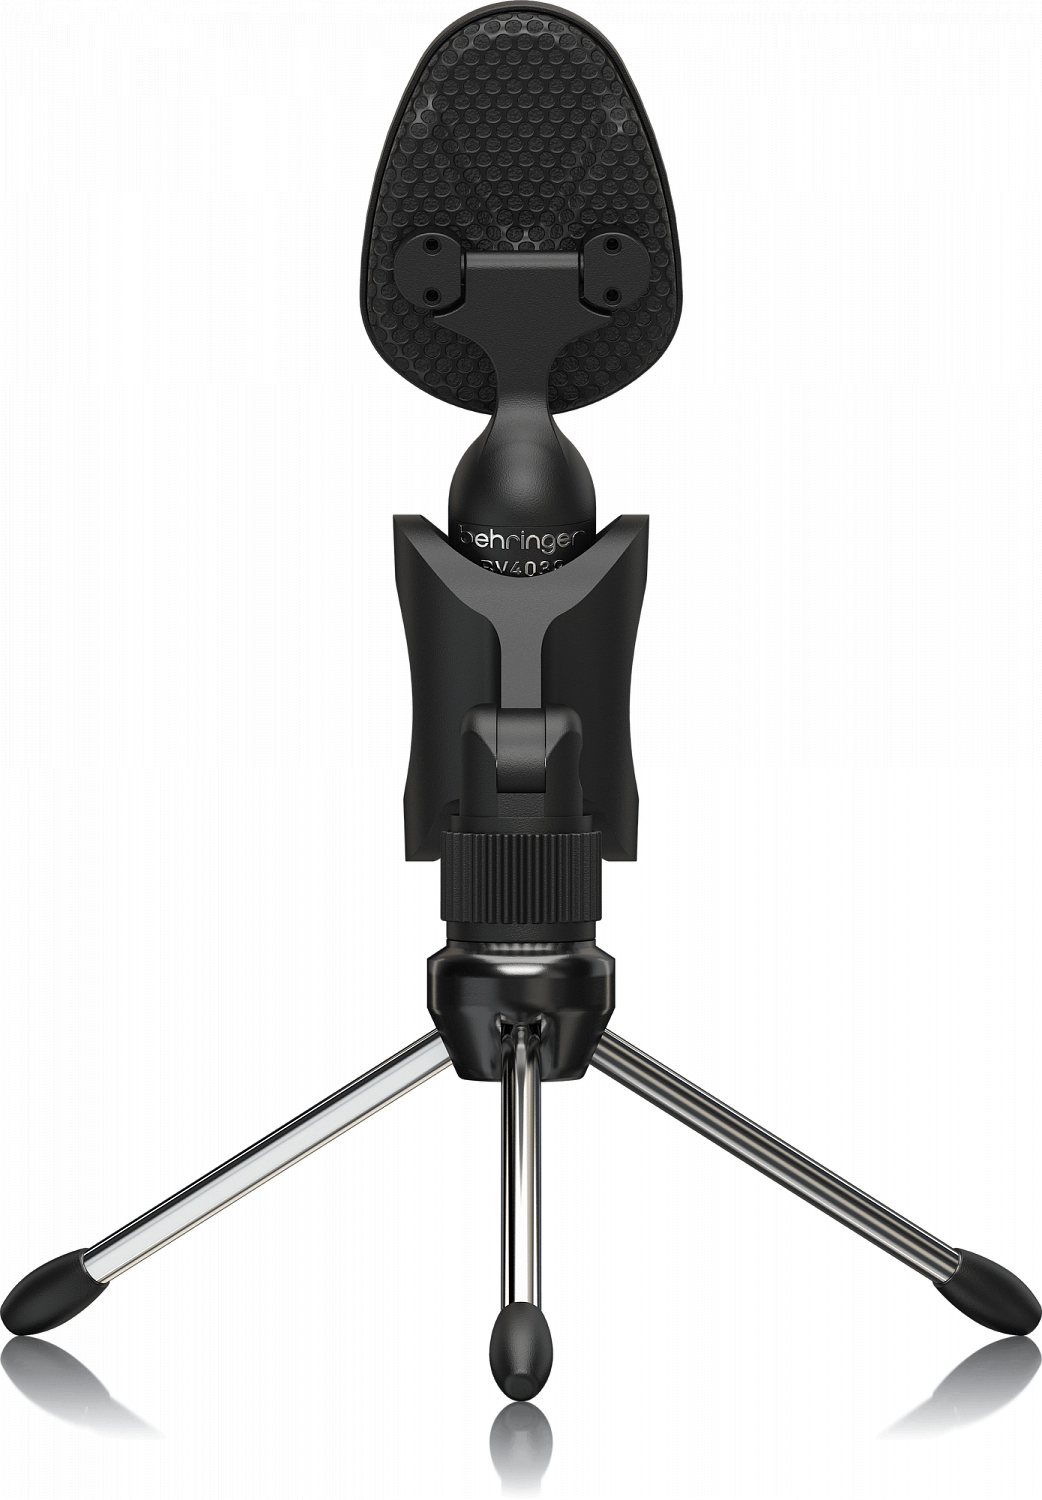 Behringer BV4038 винтажный конденсаторный USB-микрофон, суперкардиоидный, диафрагма 14 мм, 50-17000 kHz, SPL 132 дБ, стойка и держатель в комплекте